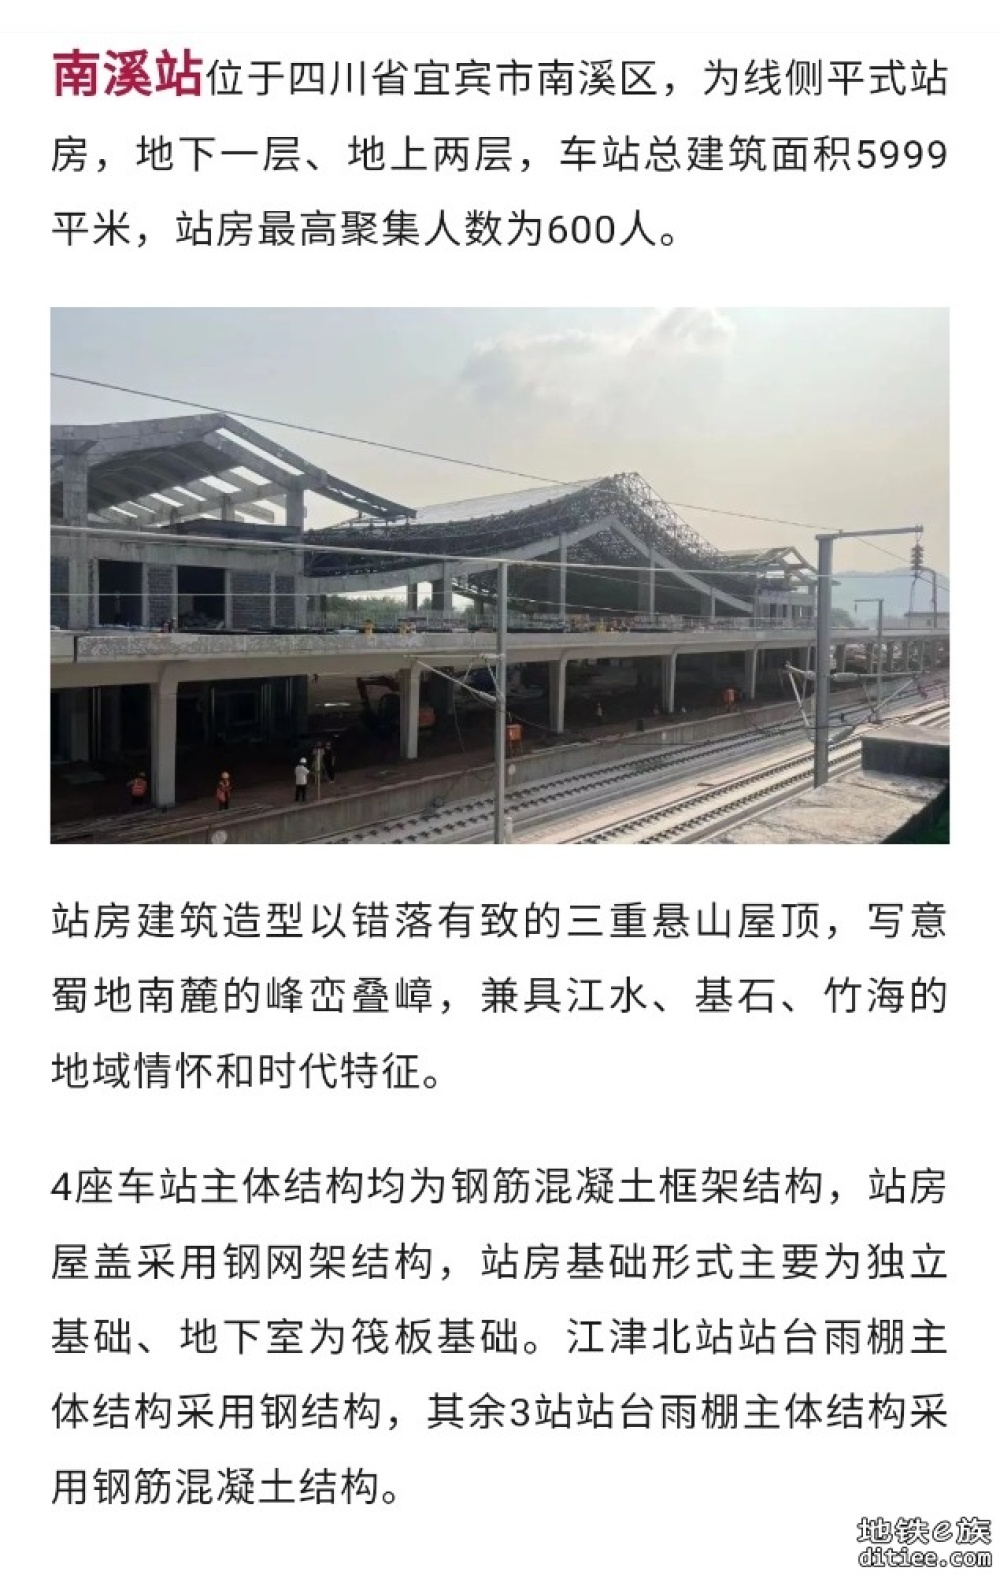 渝昆高铁川渝段4座站房主体结构完成